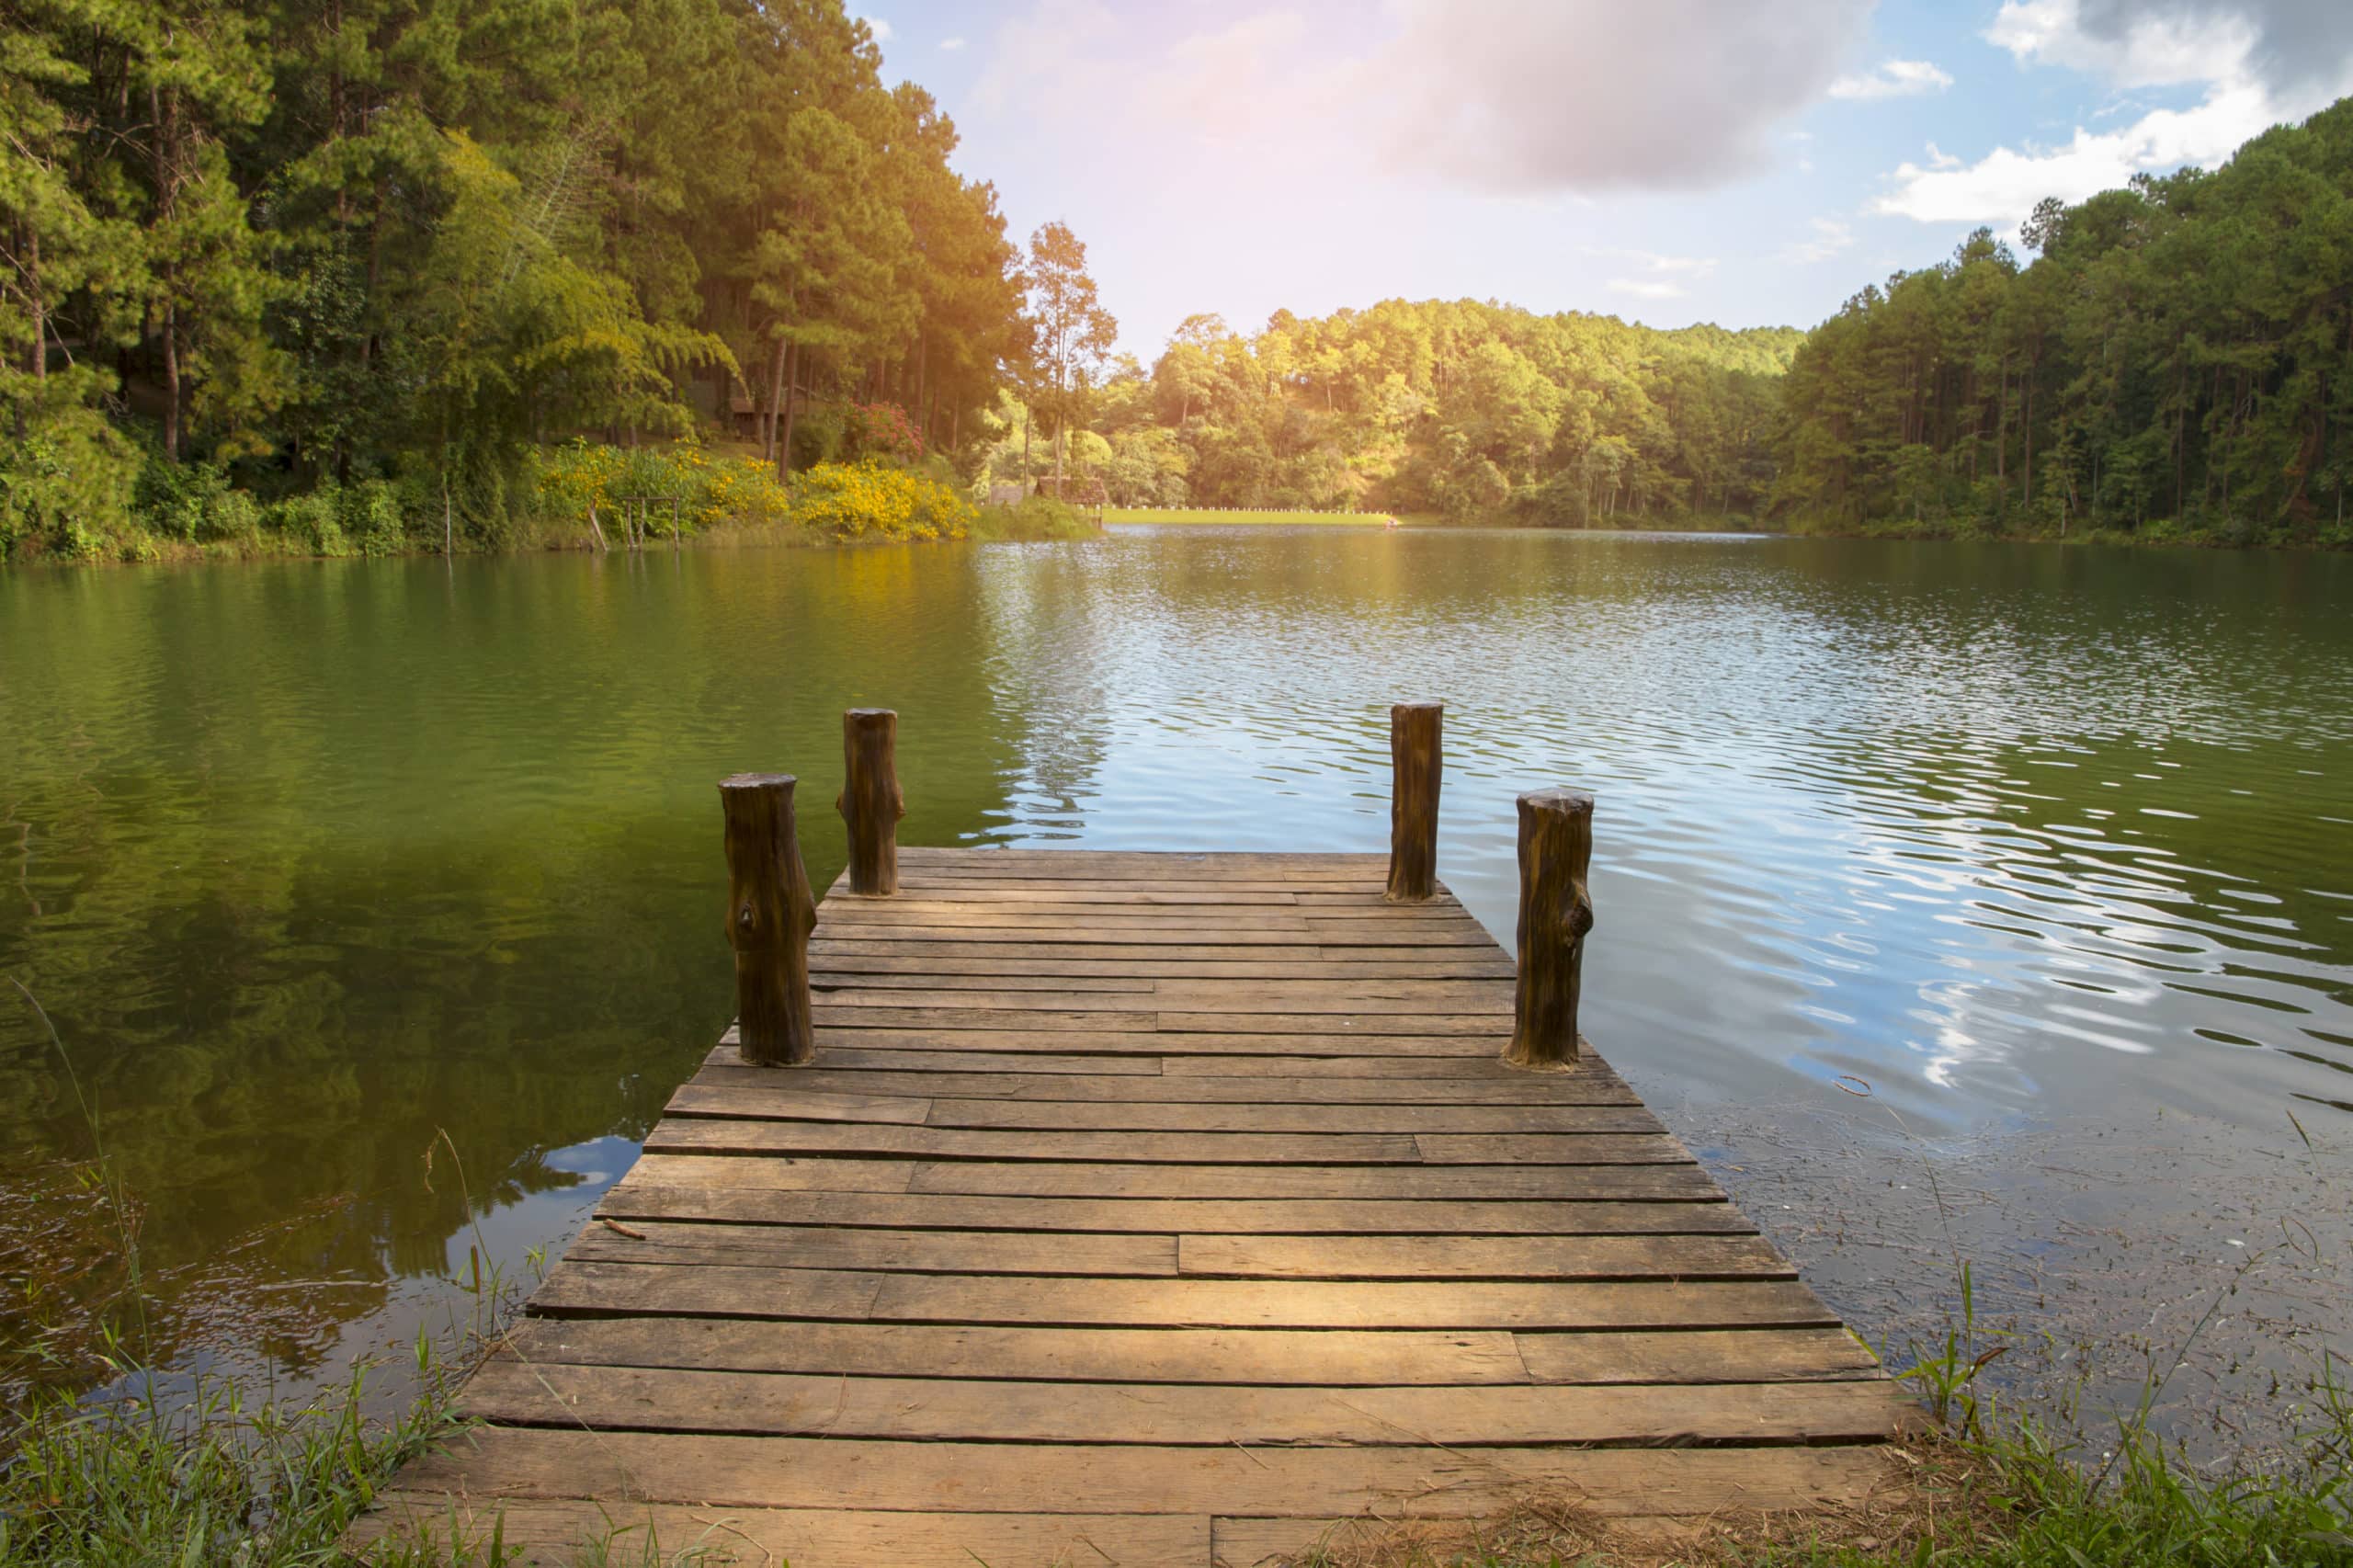 beautiful scenery - wooden dock beside lake